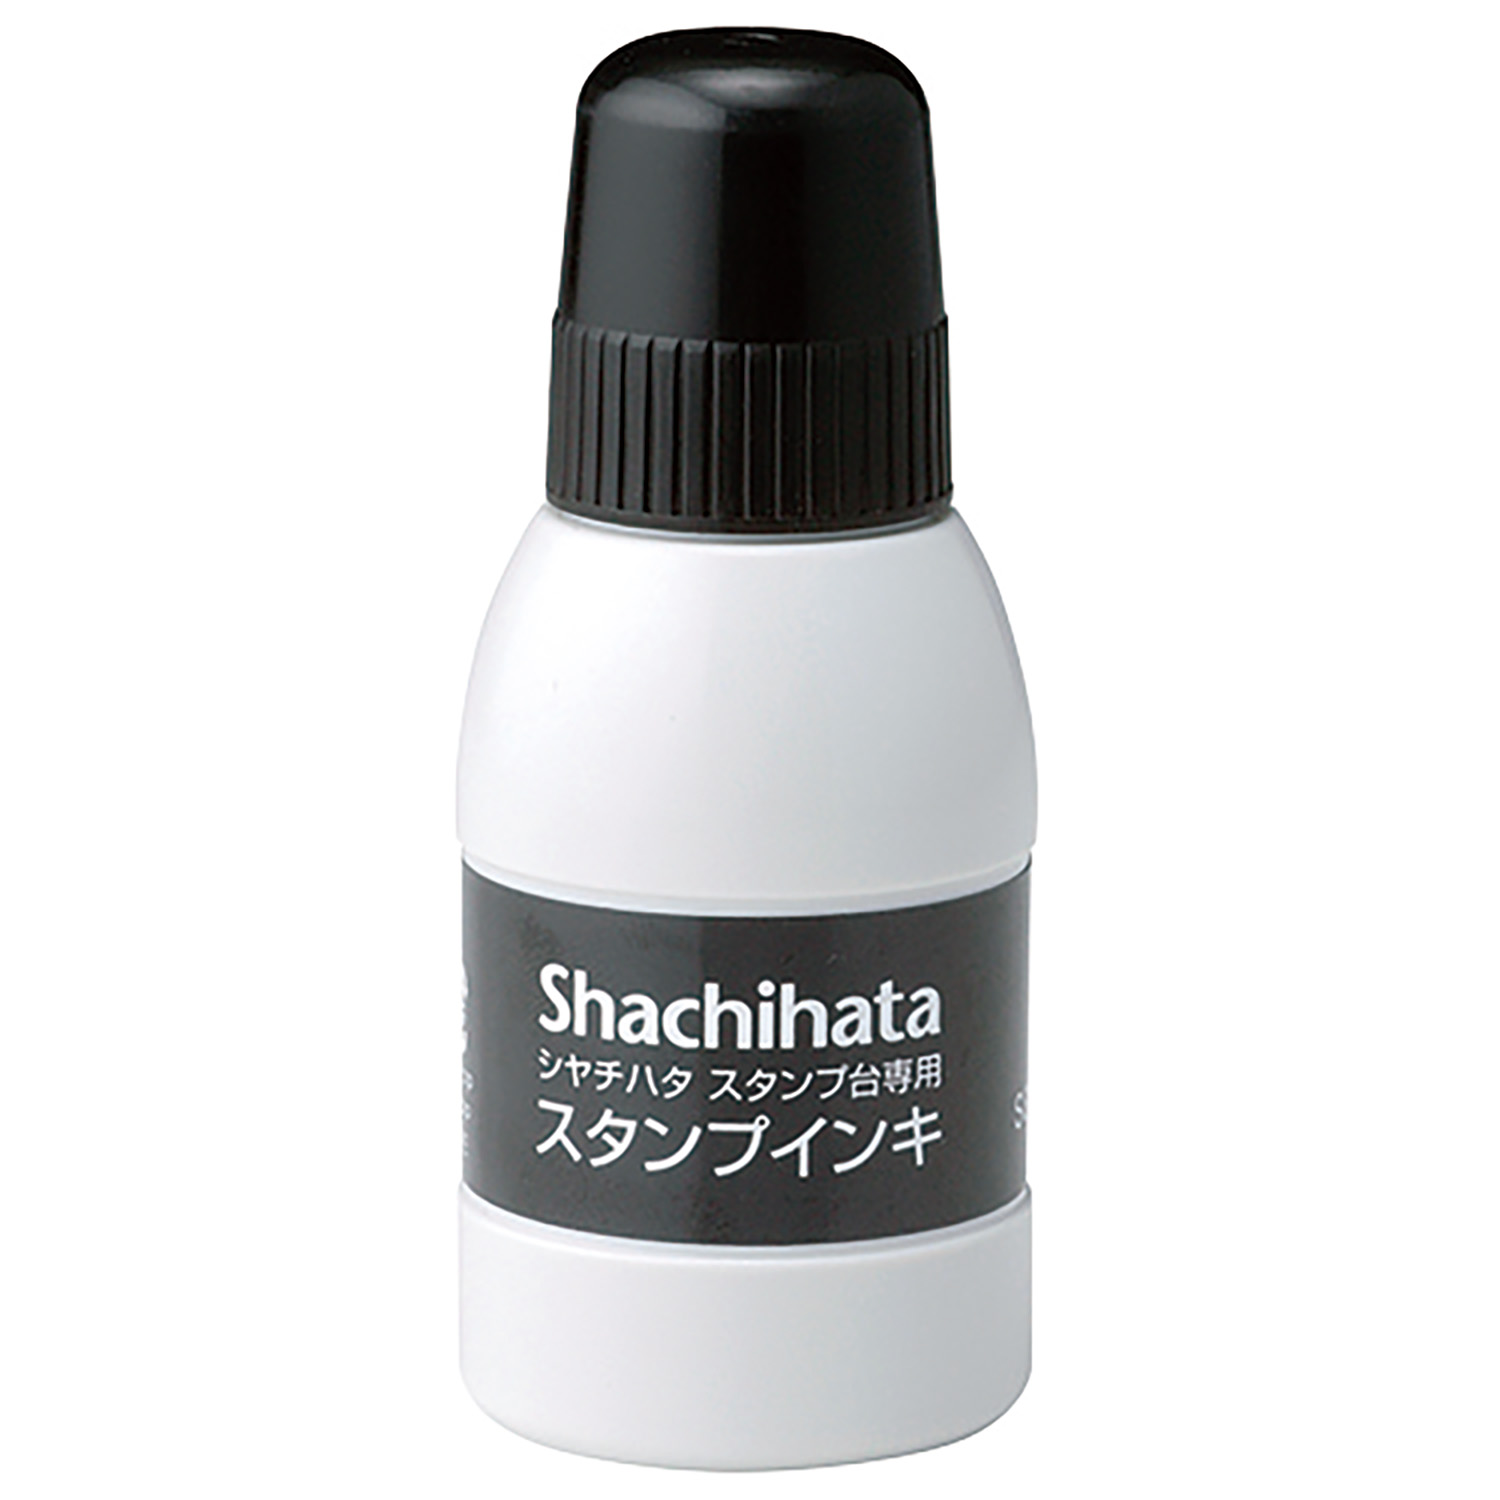 シヤチハタスタンプ台専用スタンプインキ 小瓶 黒